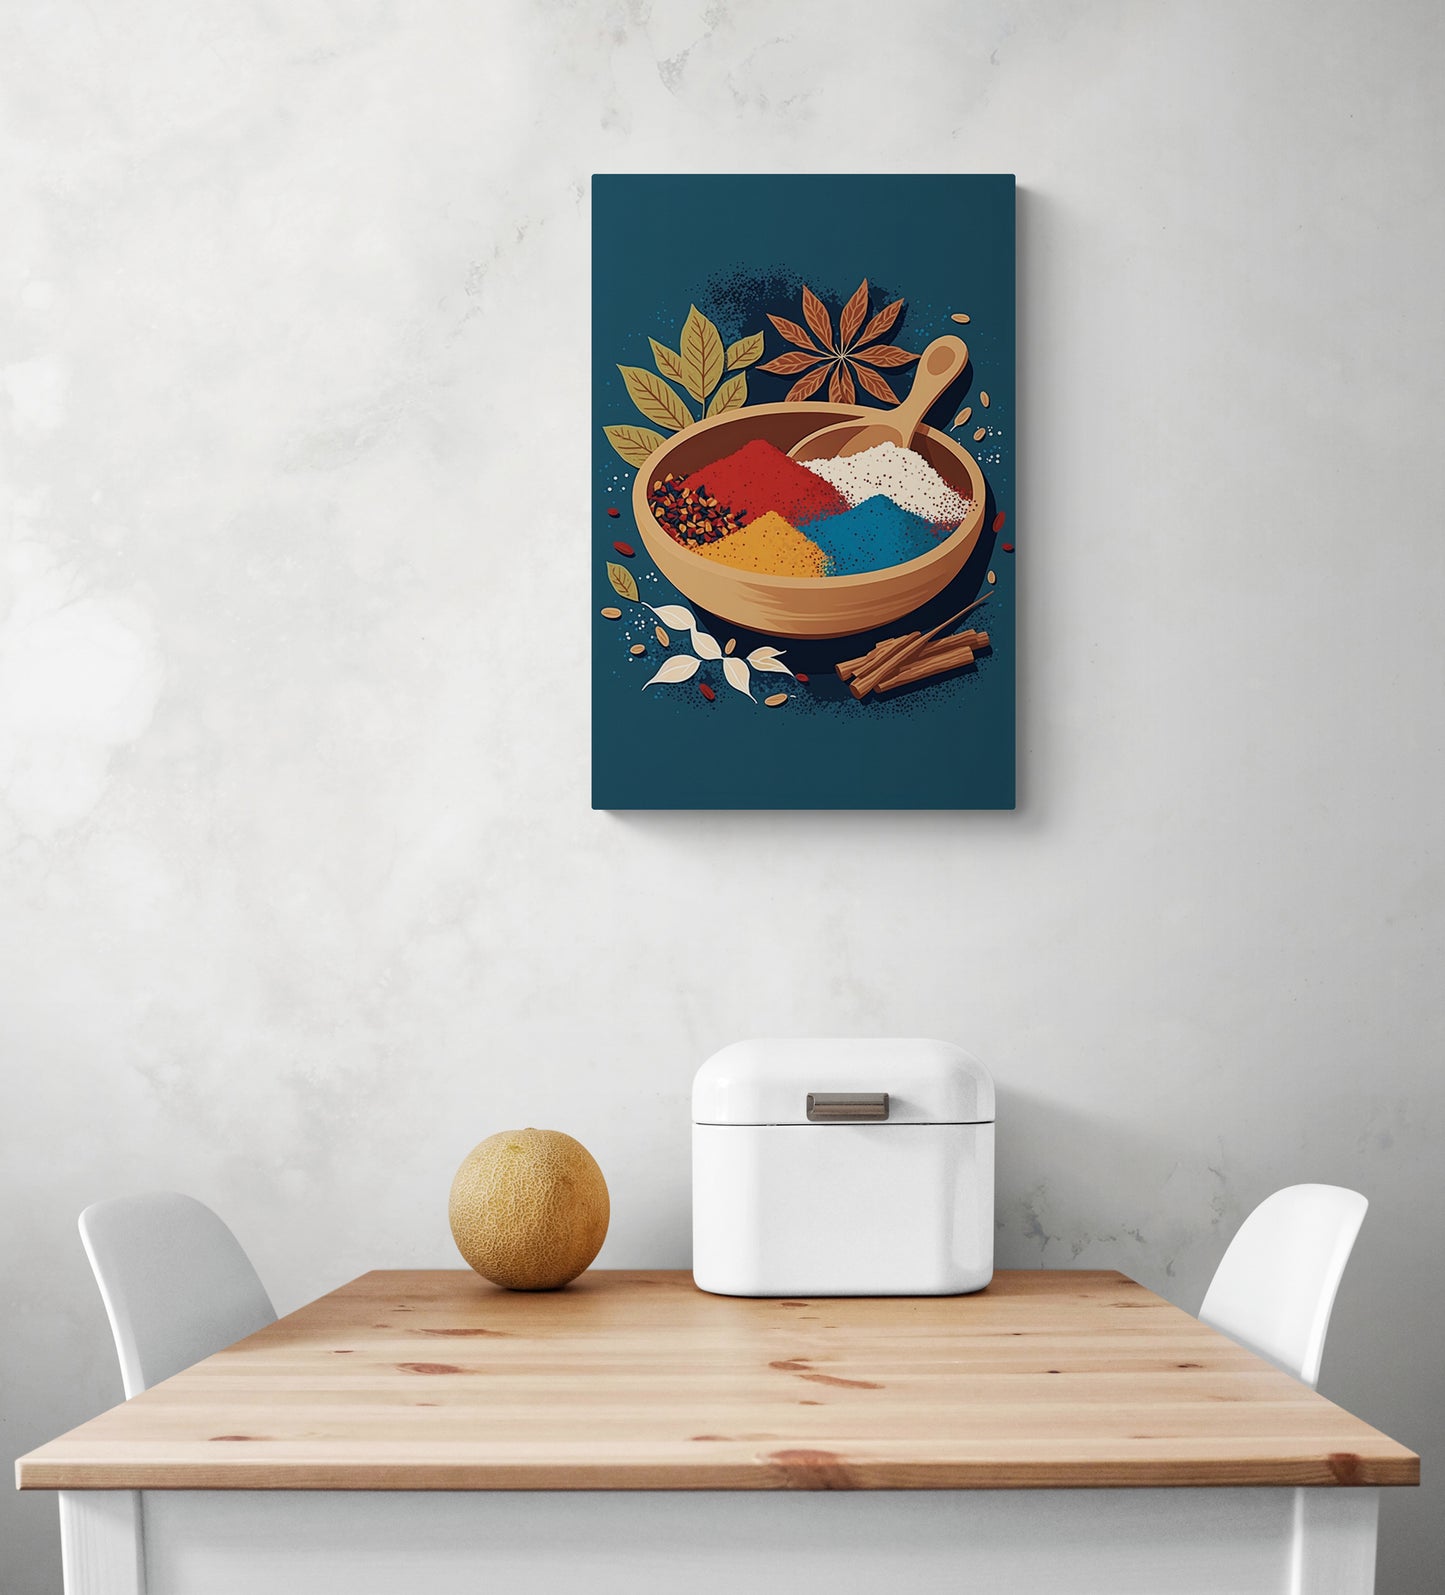 idee deco tableau bleu canard pour cuisine avec une illustration d'un bol rempli d'épices est accroché au-dessus d'une table en bois blanc